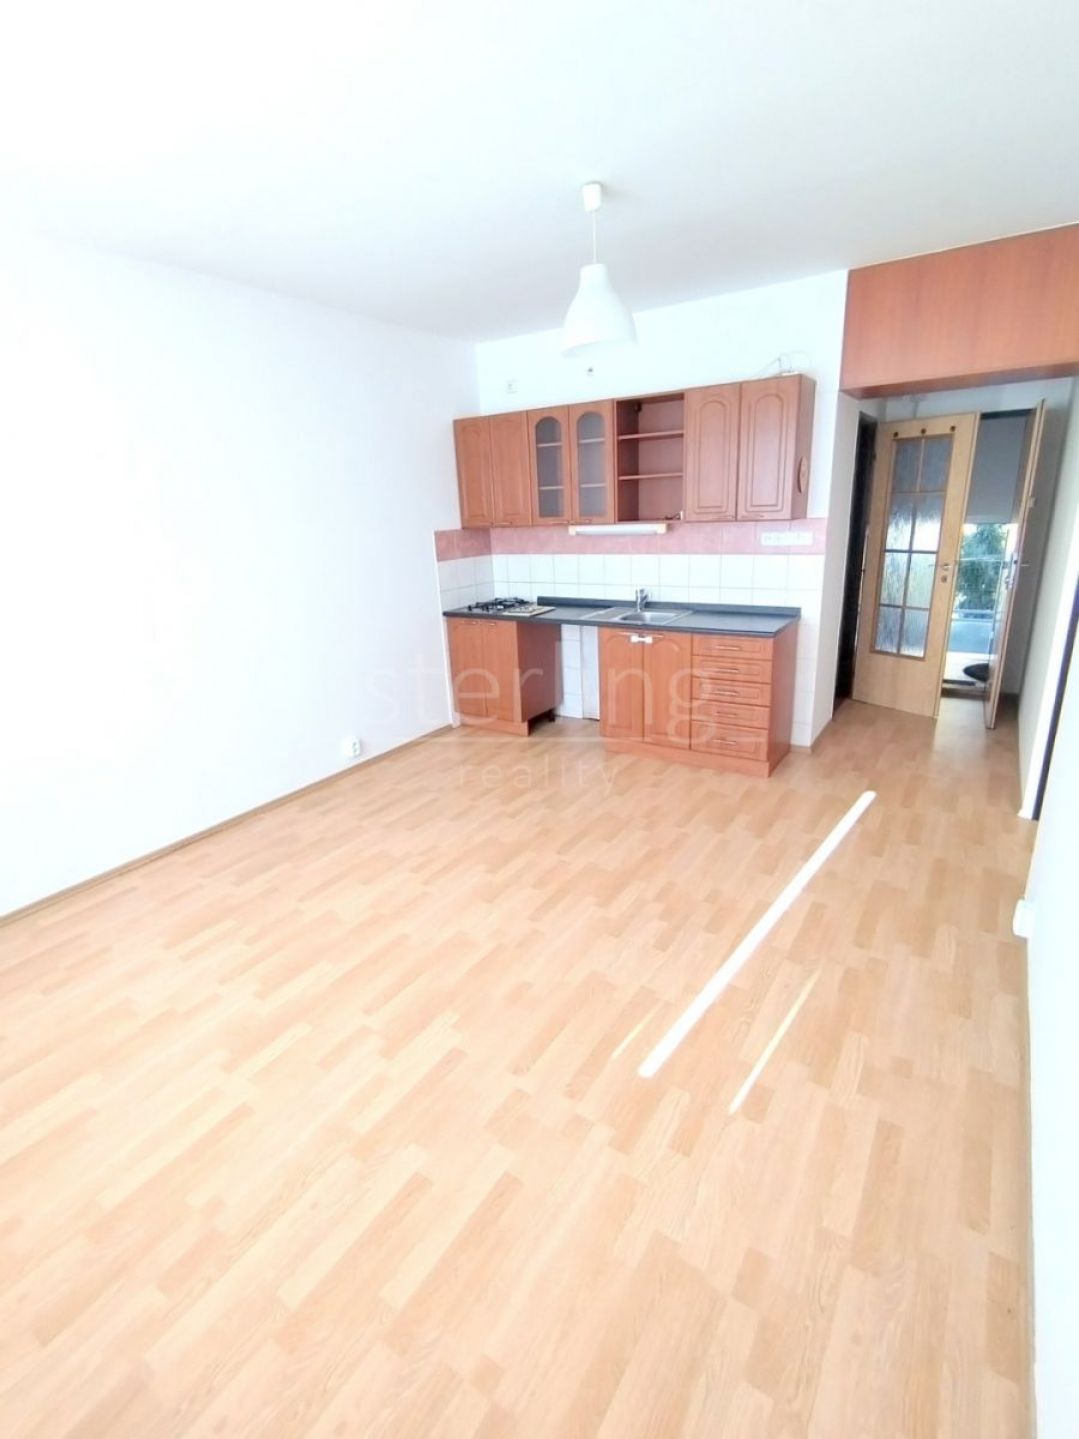 Prodej bytu 1+1/L, 44,2 m2, P12-Kamýk, ul.Snopkova, 6.NP, panel, sklep, DV